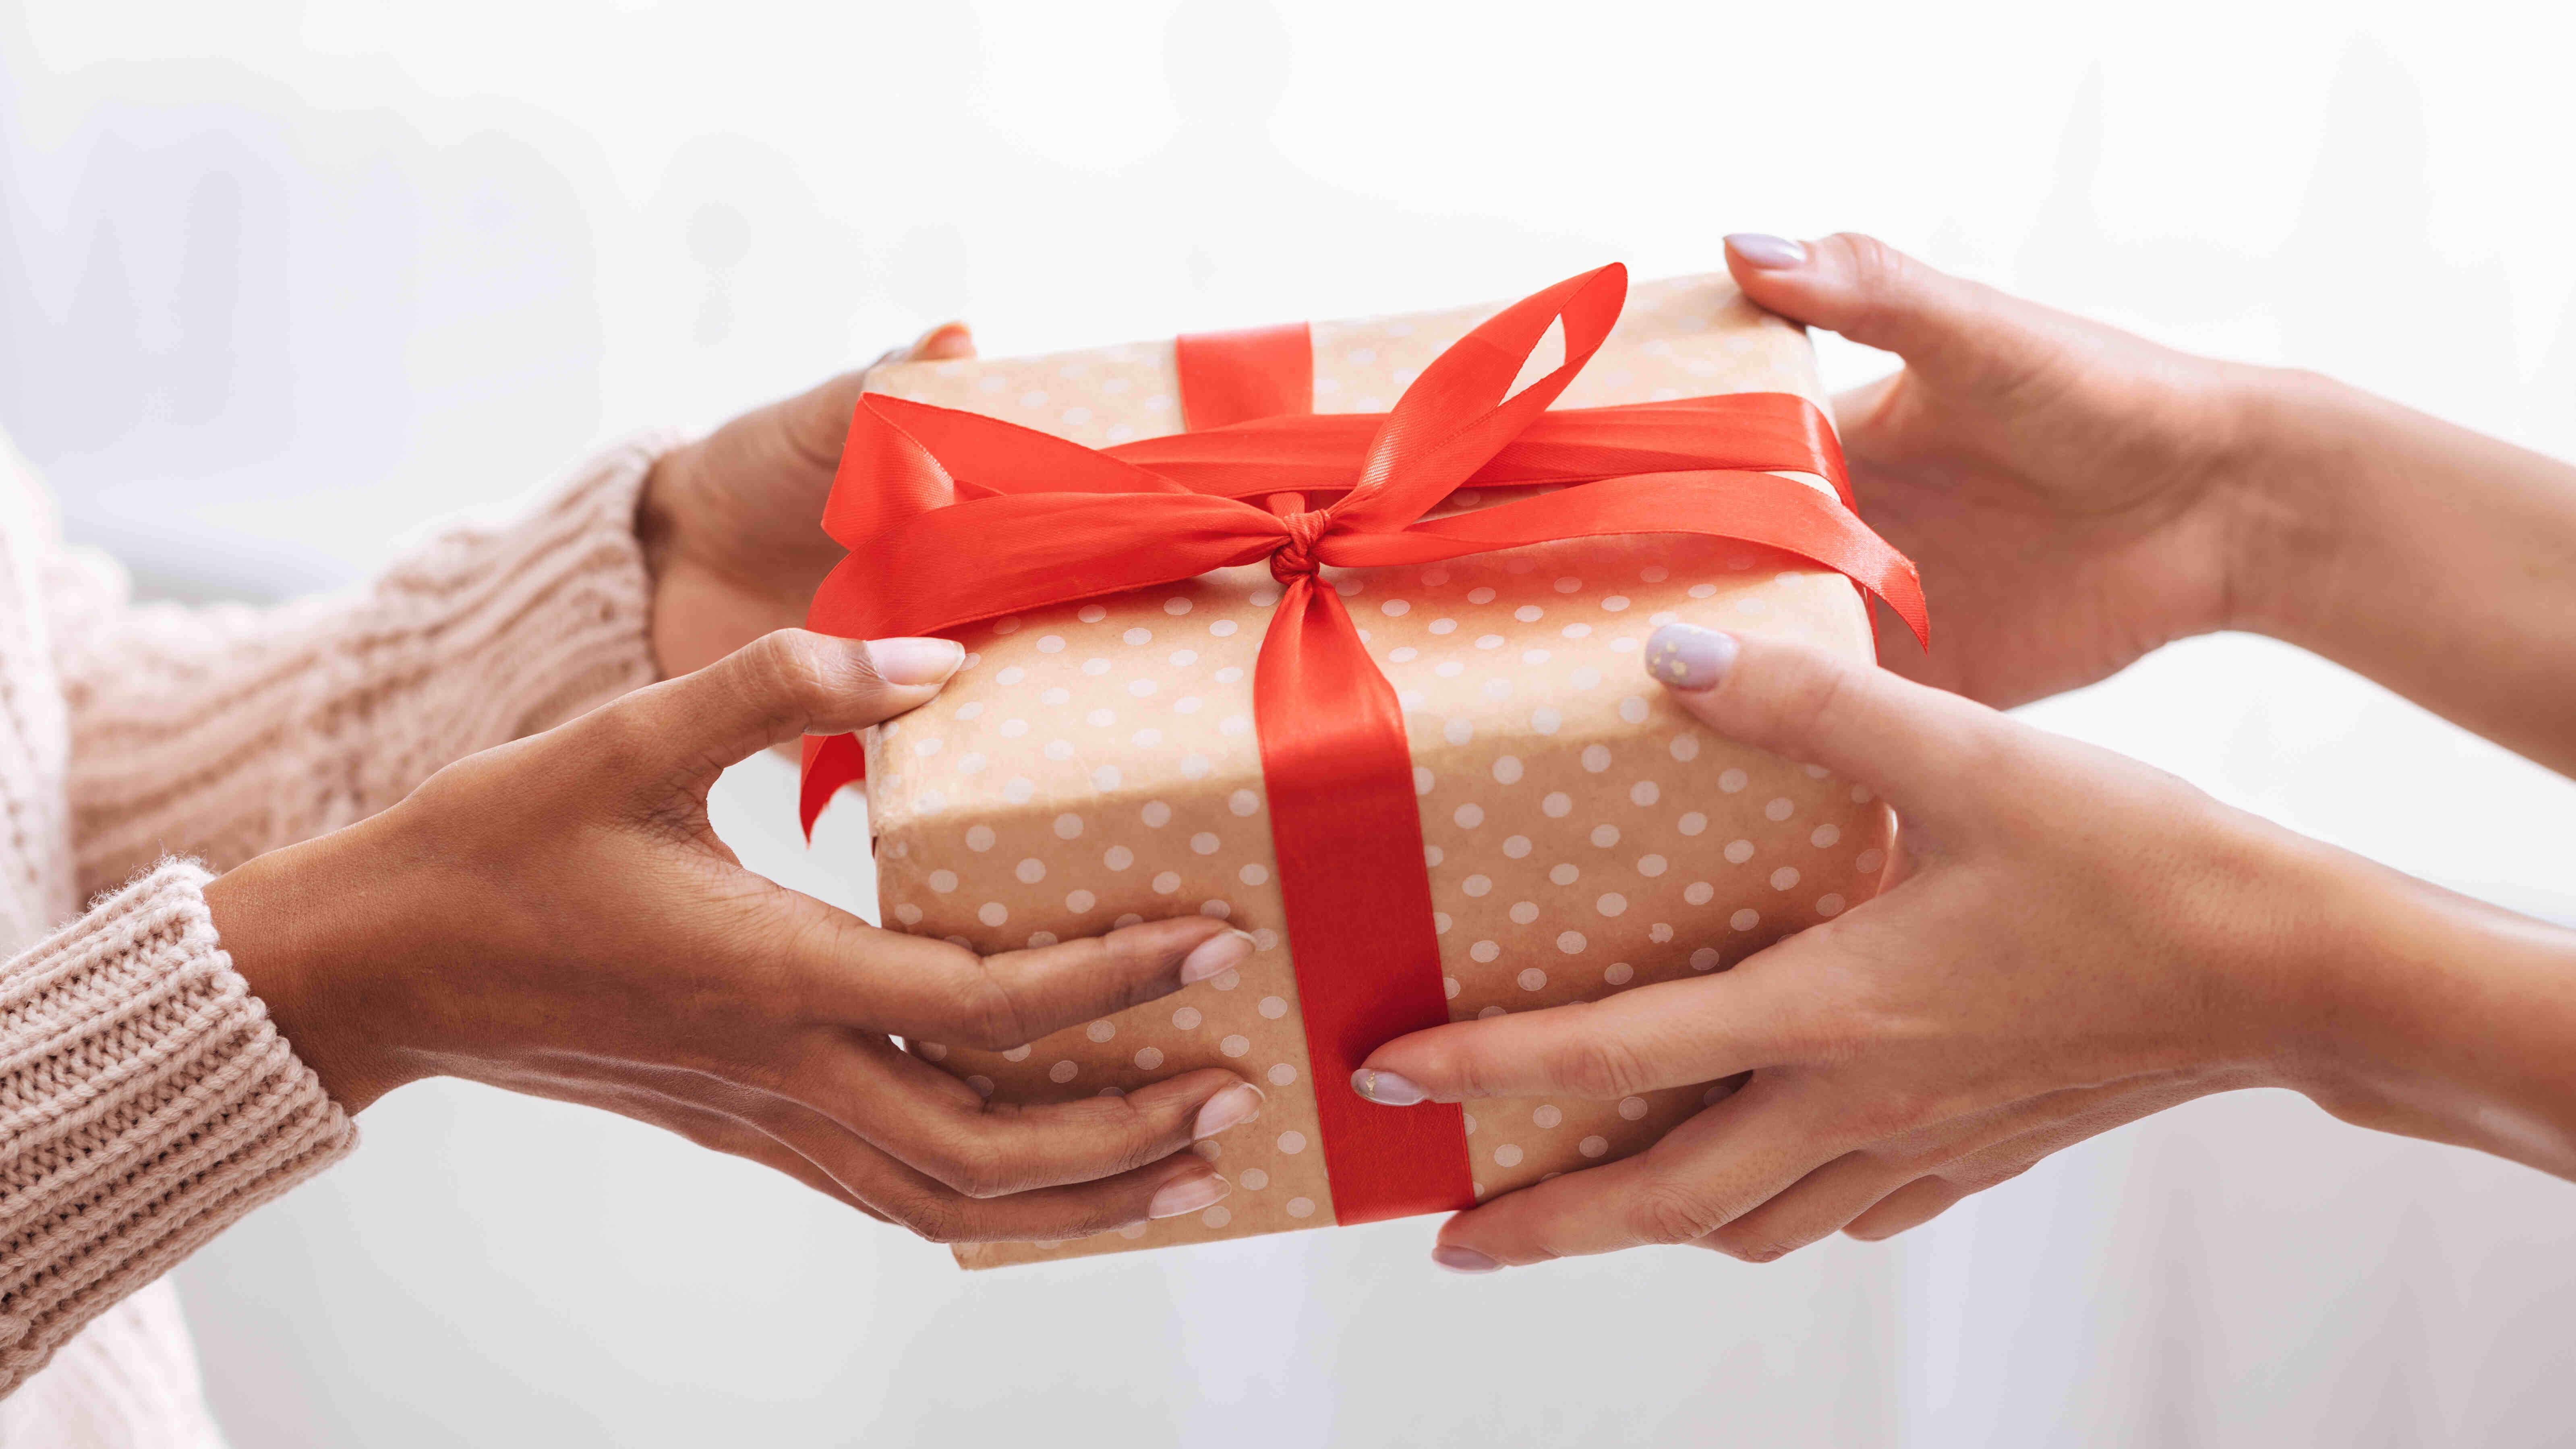 Qual o sentido religioso de dar presentes no Natal? 